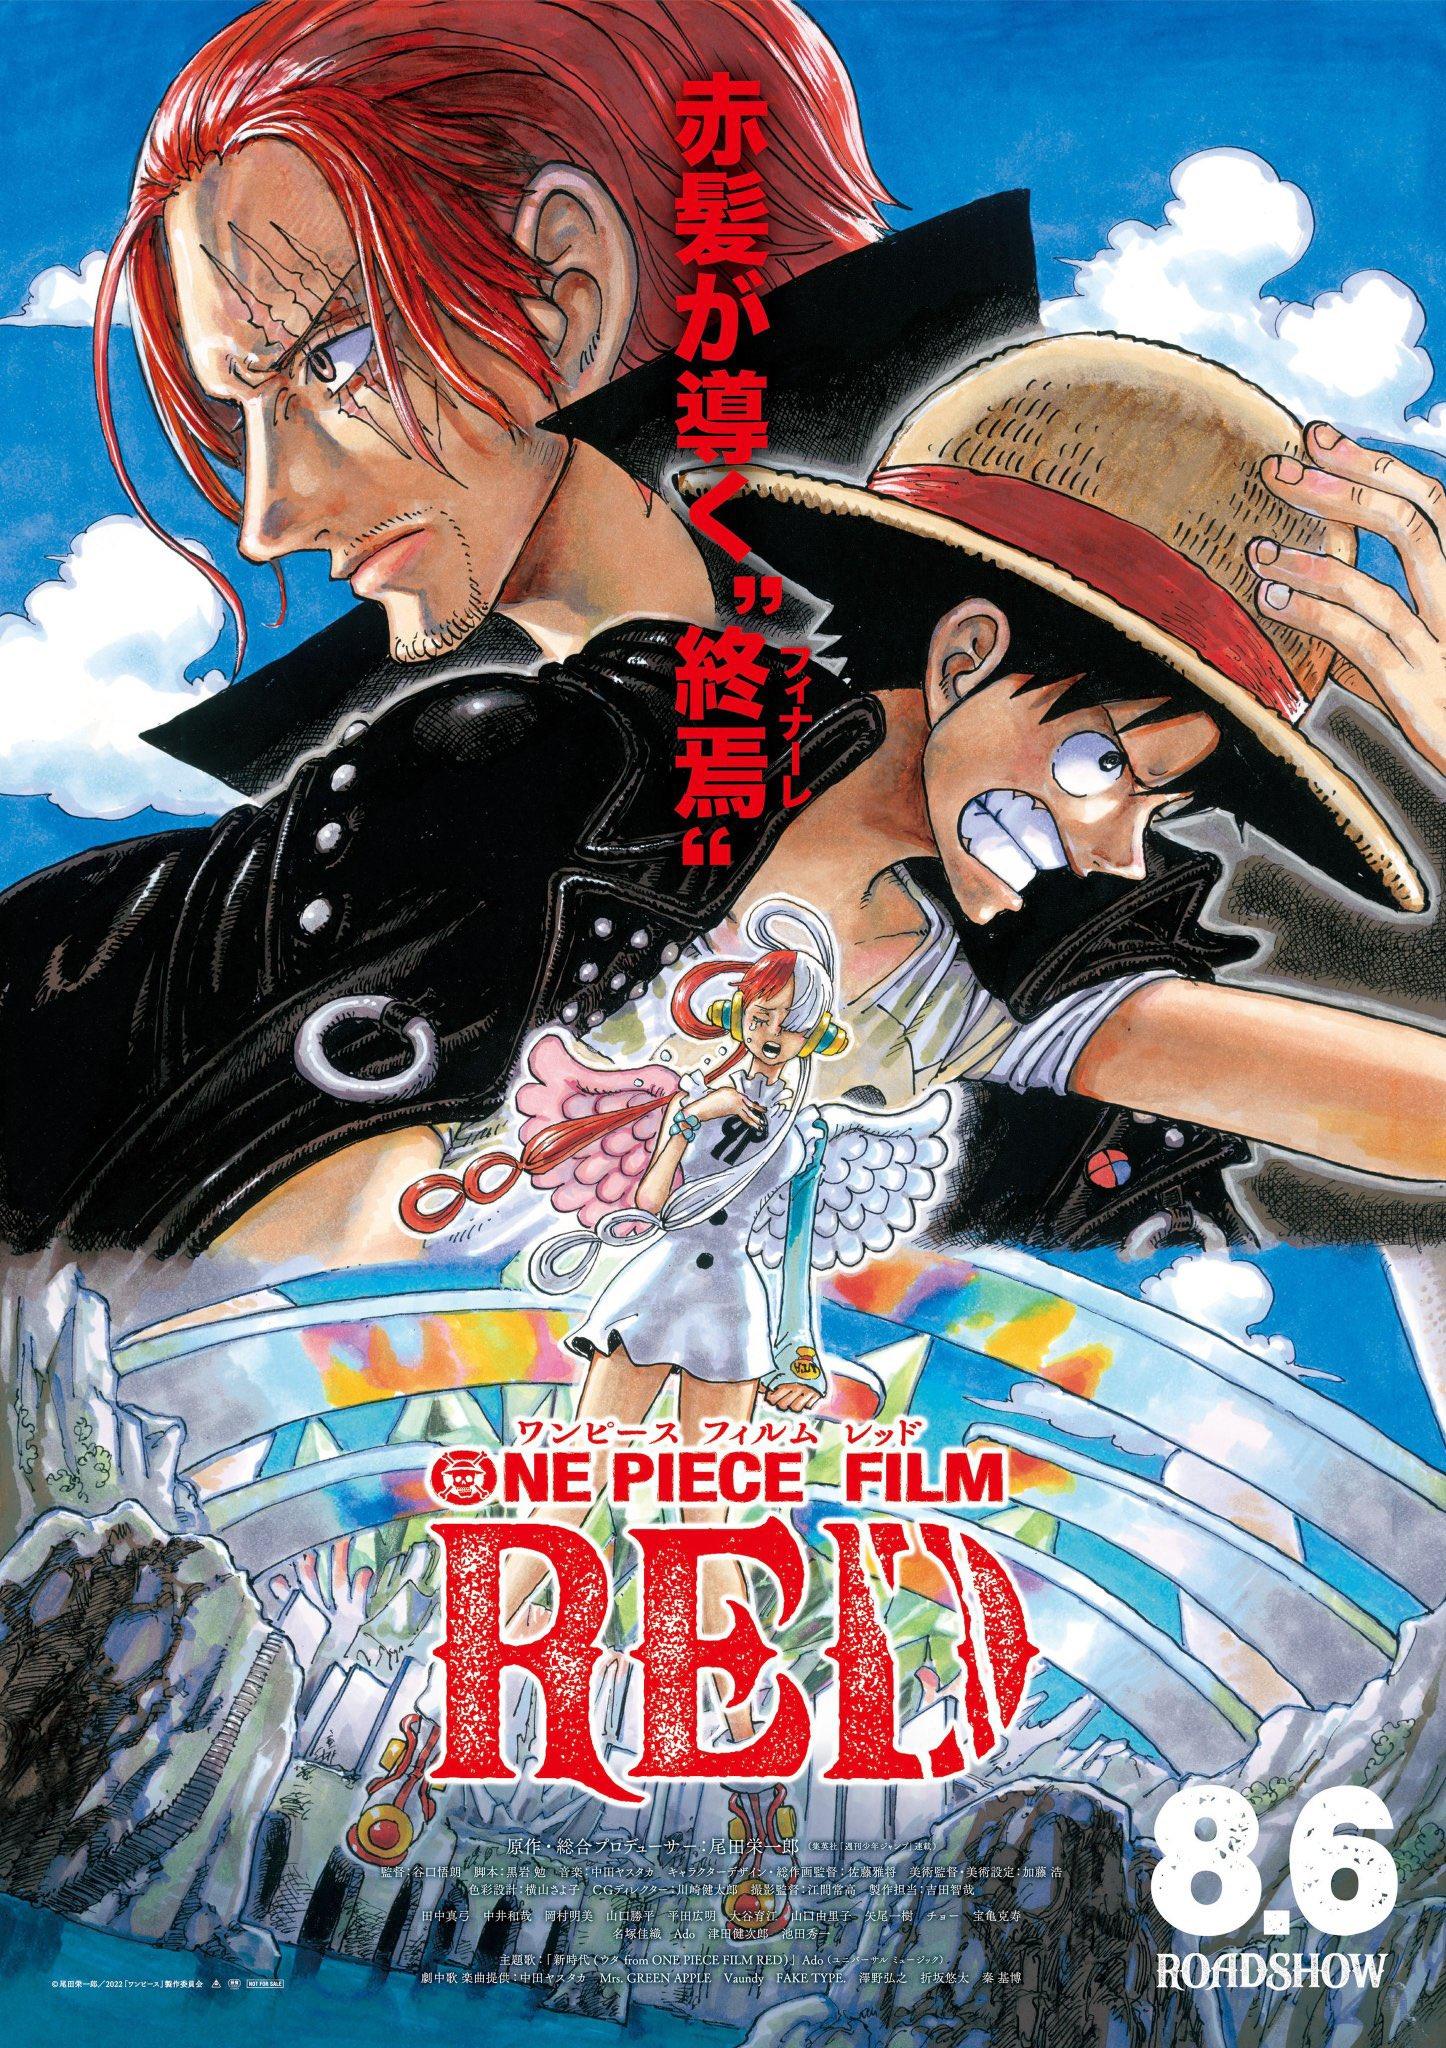 Pôster de One Piece Fim: Red (Reprodução)